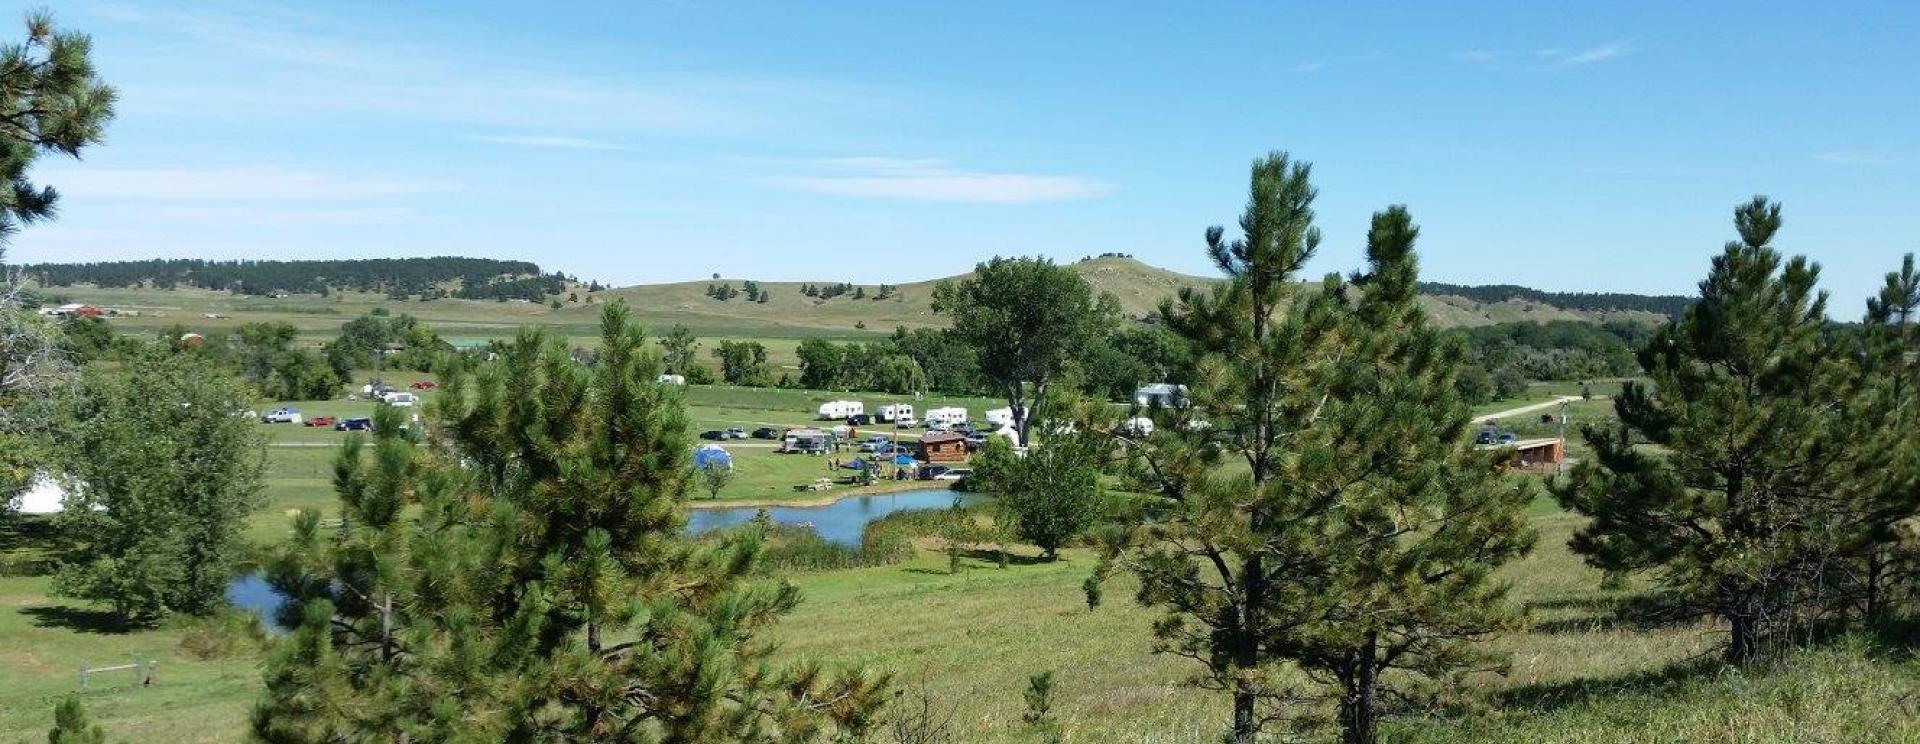 Elk Creek Resort